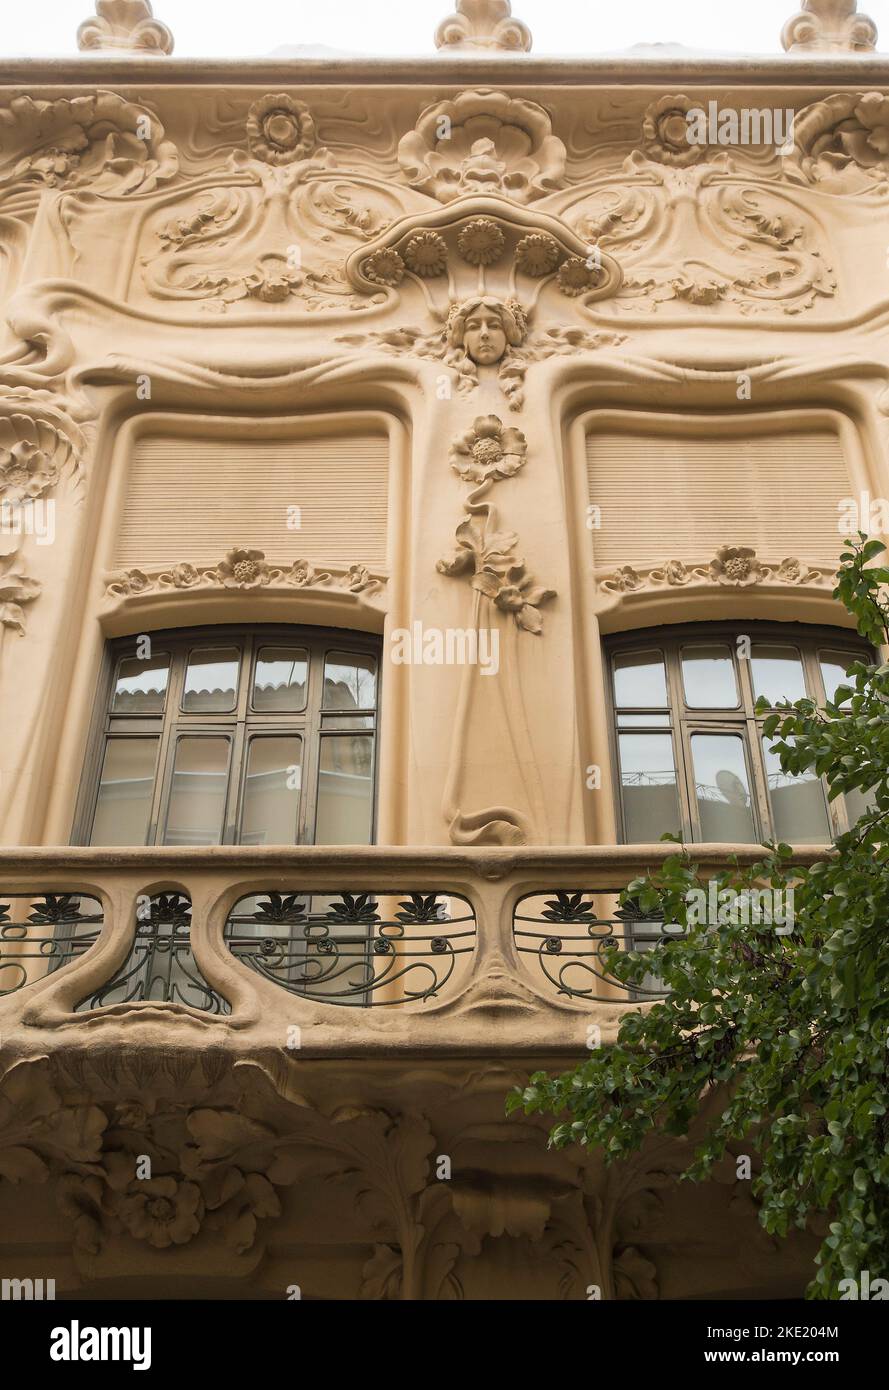 Détails architecturaux Art nouveau sur le bâtiment à Madrid, Espagne Banque D'Images